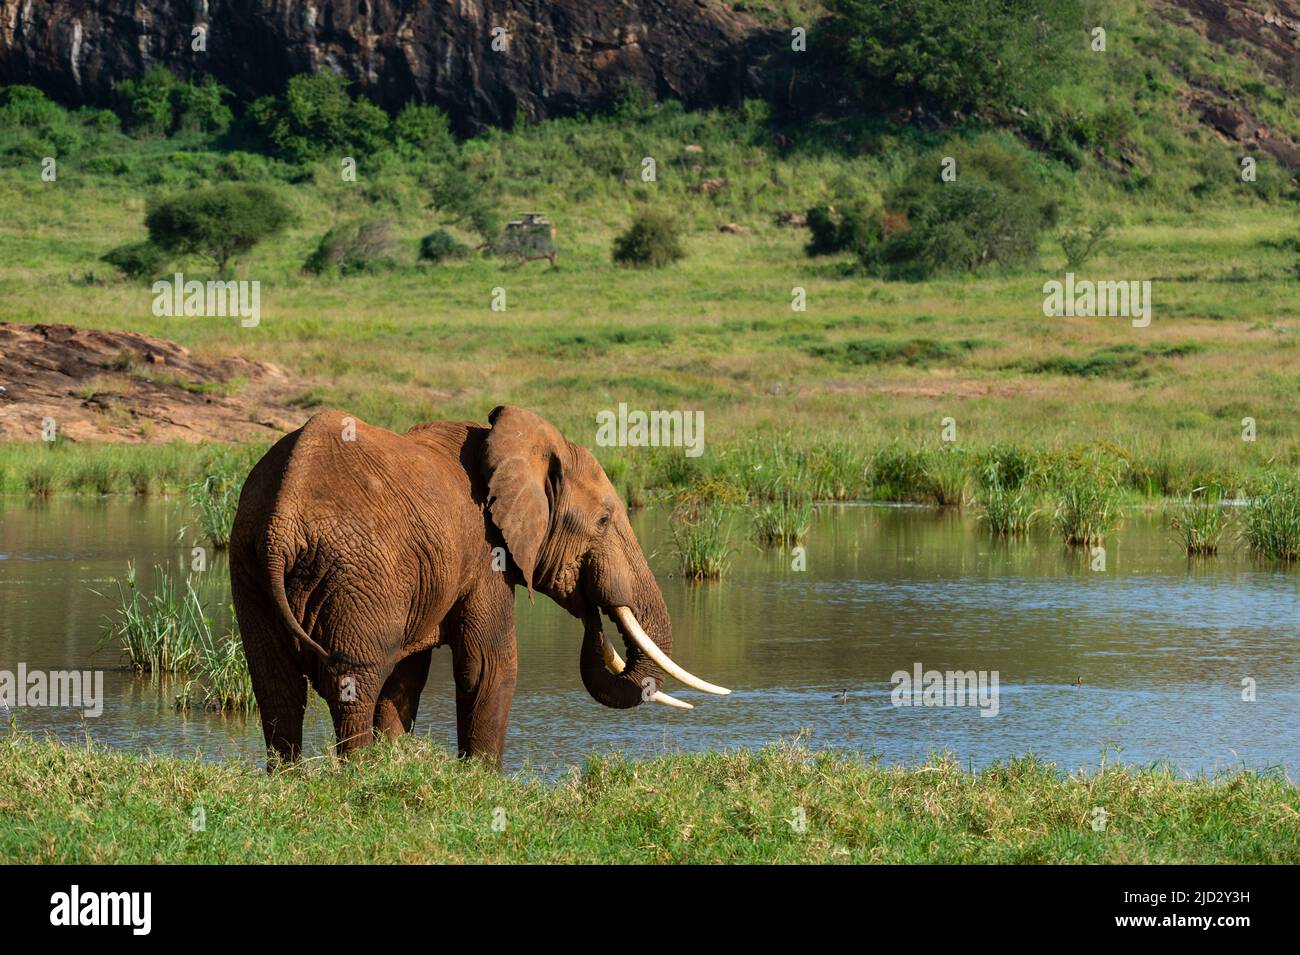 African elephant (Loxodonta africana), Lualenyi, Tsavo Conservation Area, Kenya. Stock Photo